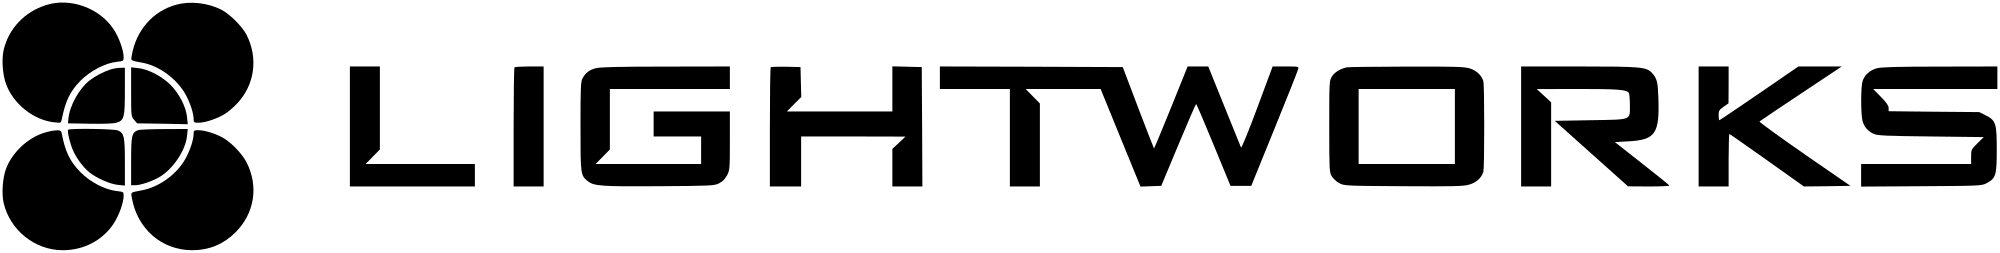 Logo de lughtworks, una de las herramientas para editar vídeo